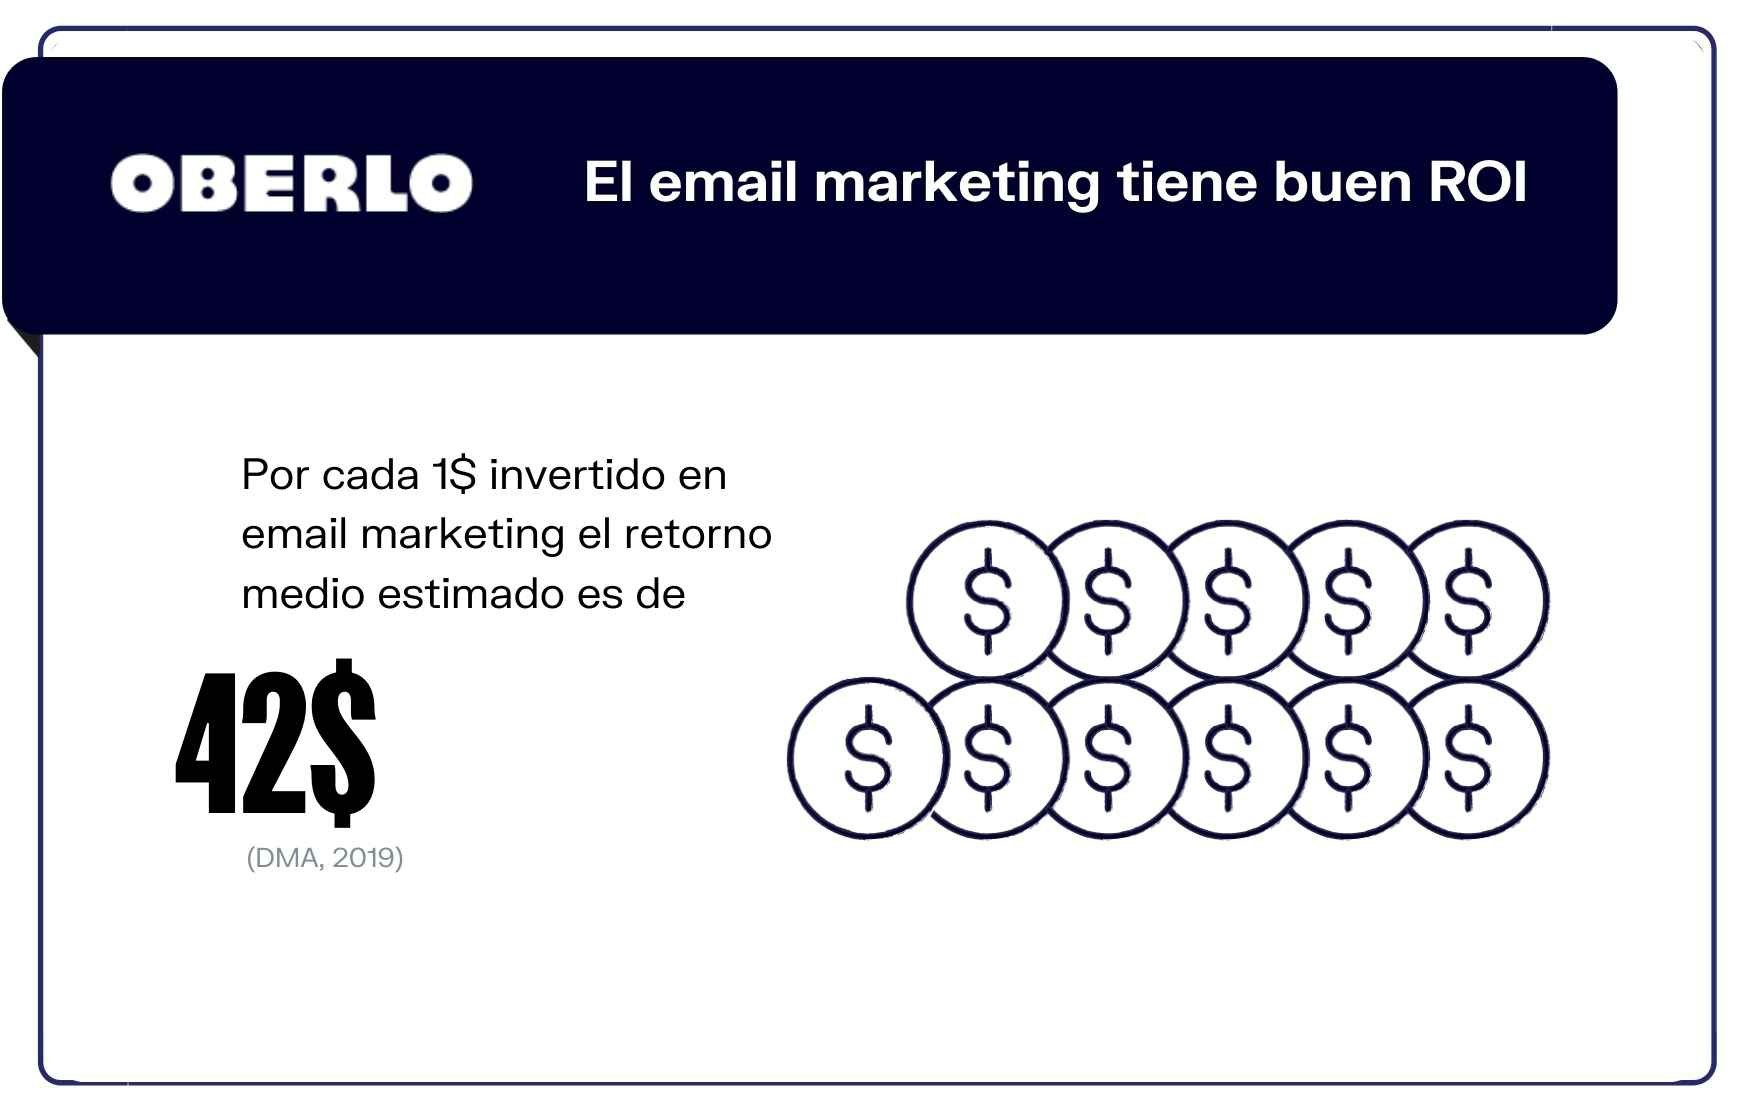 Datos de email marketing